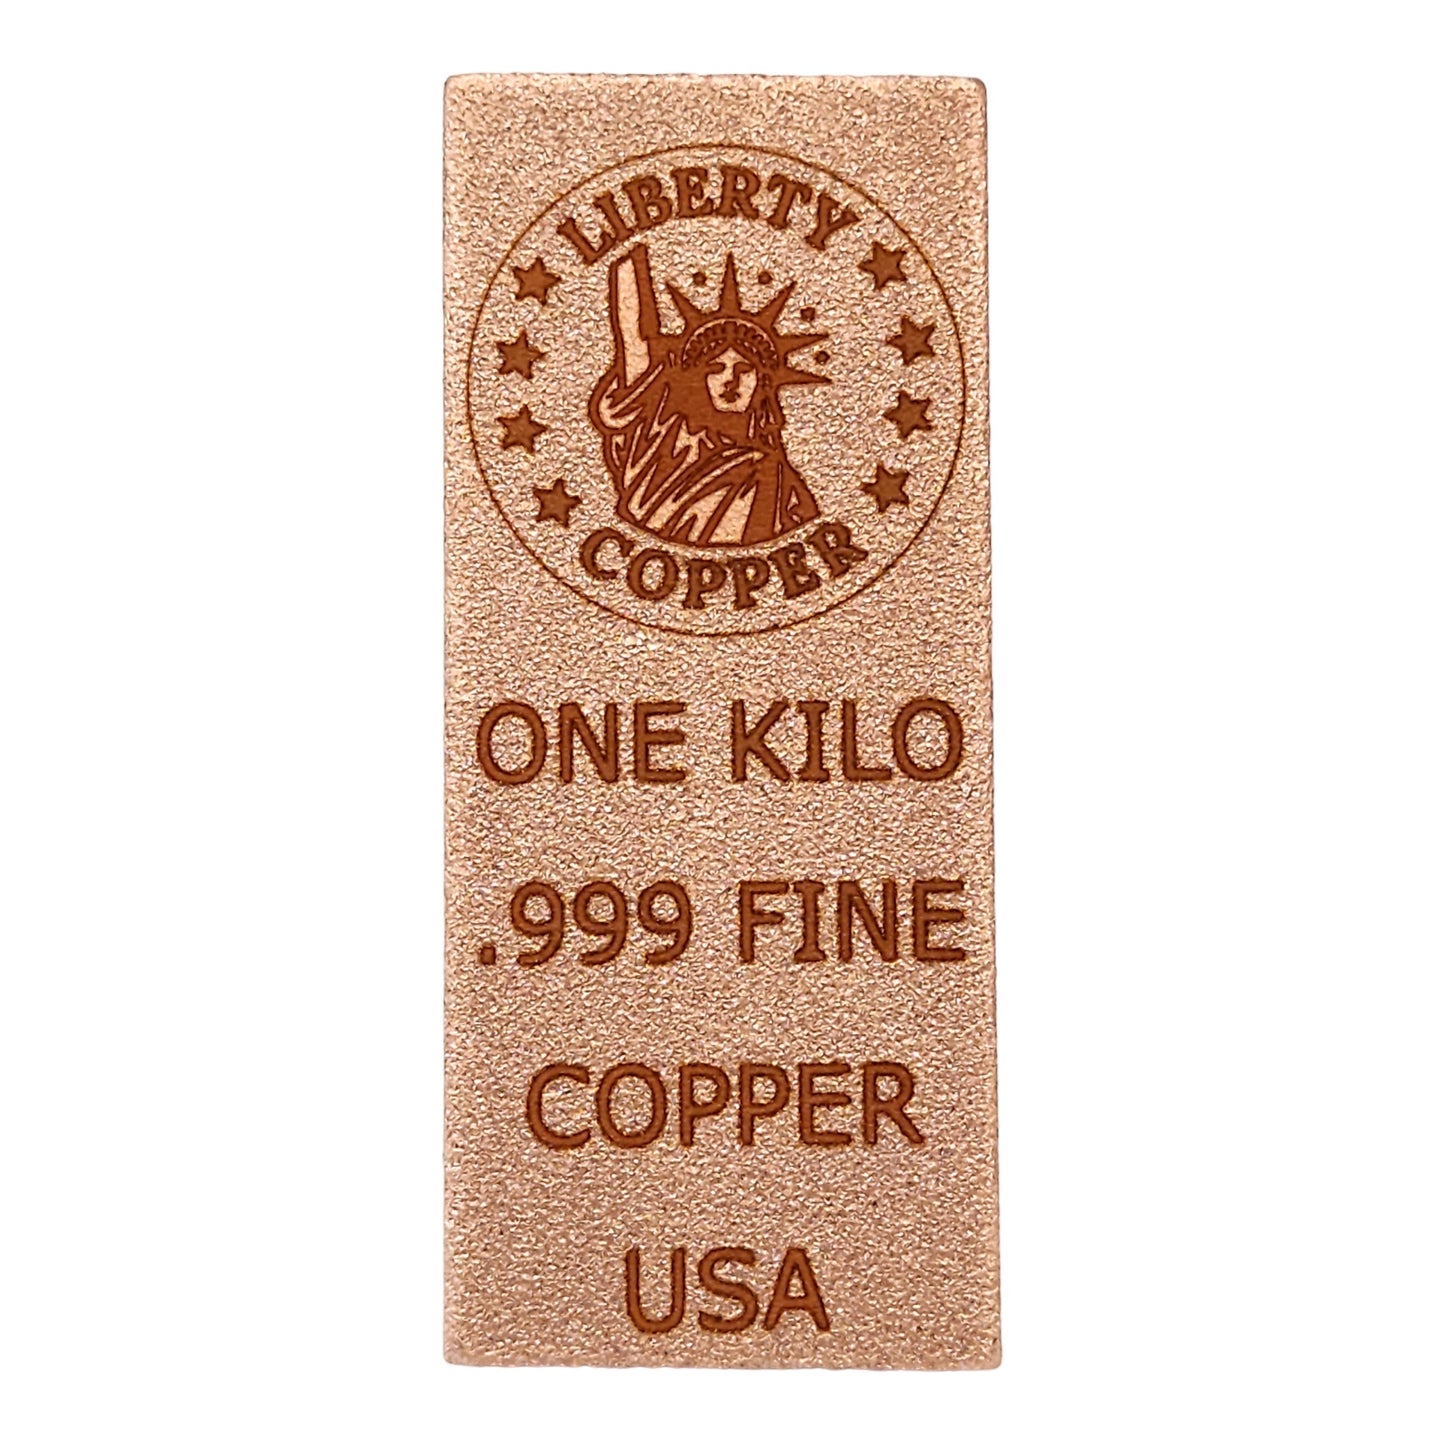 Liberty Copper Design 1 kilo Copper Bar by Liberty Copper